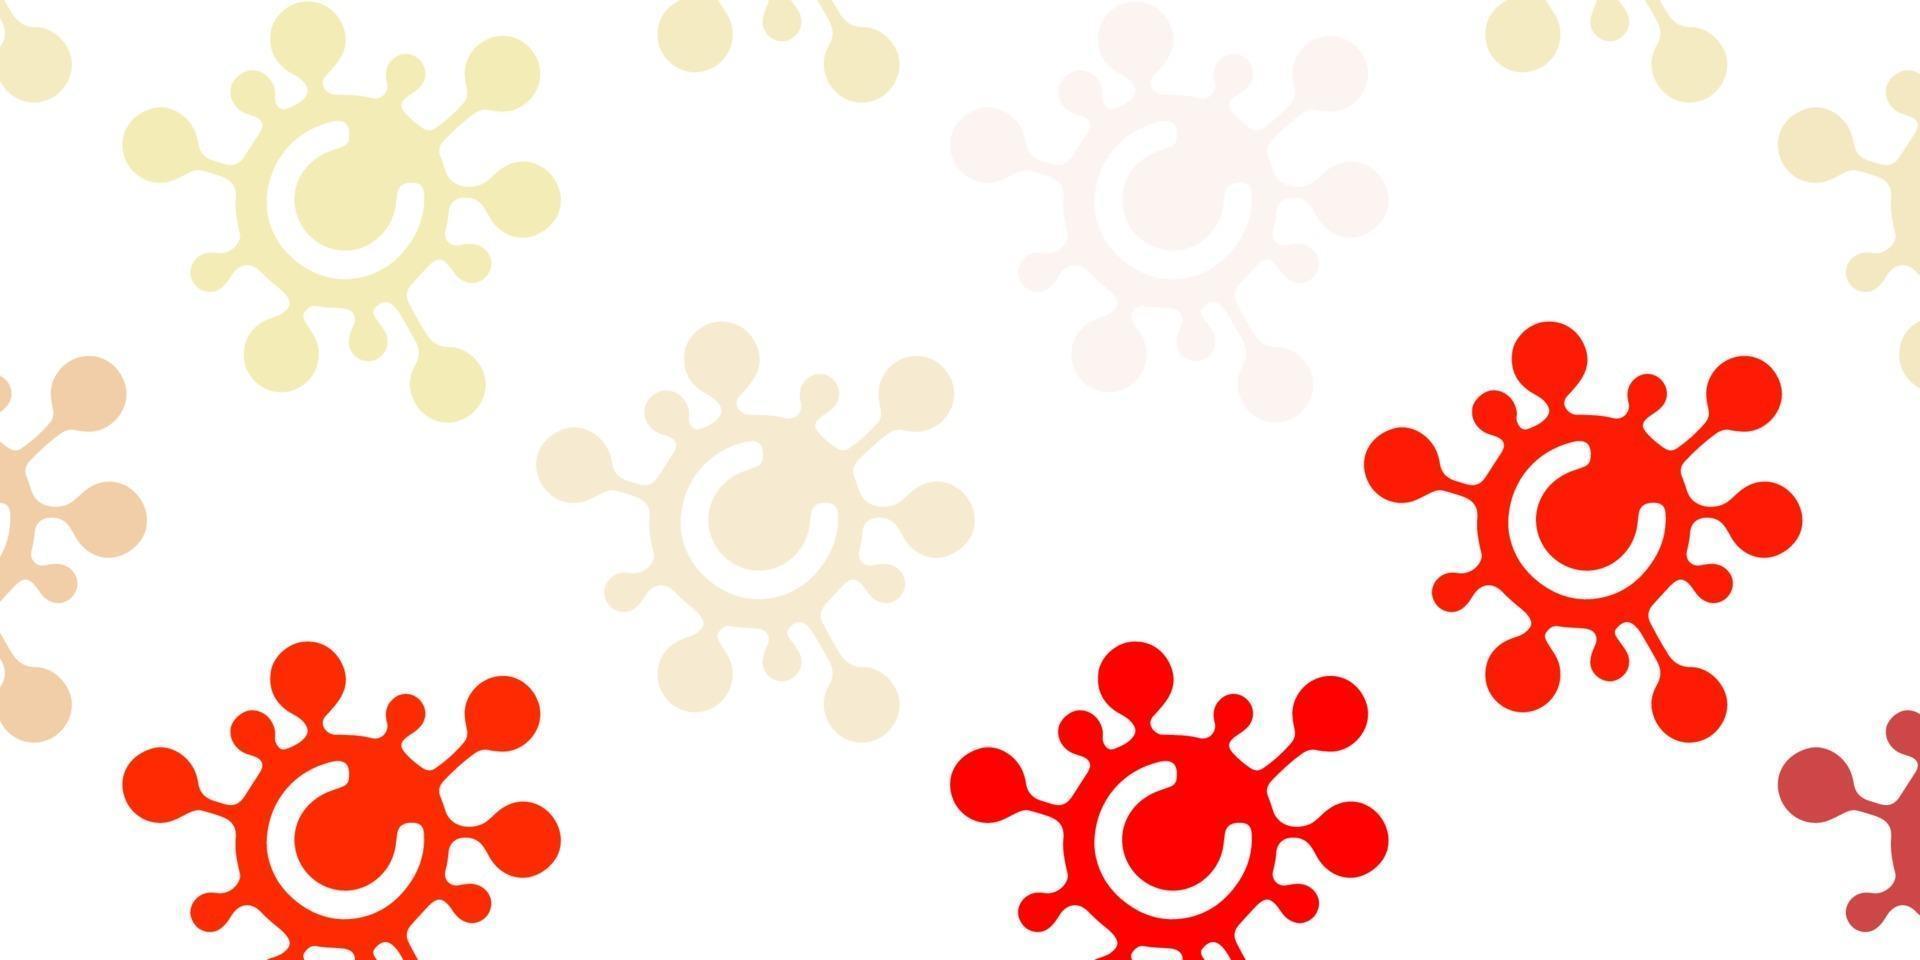 textura de vector rojo, amarillo claro con símbolos de enfermedad.